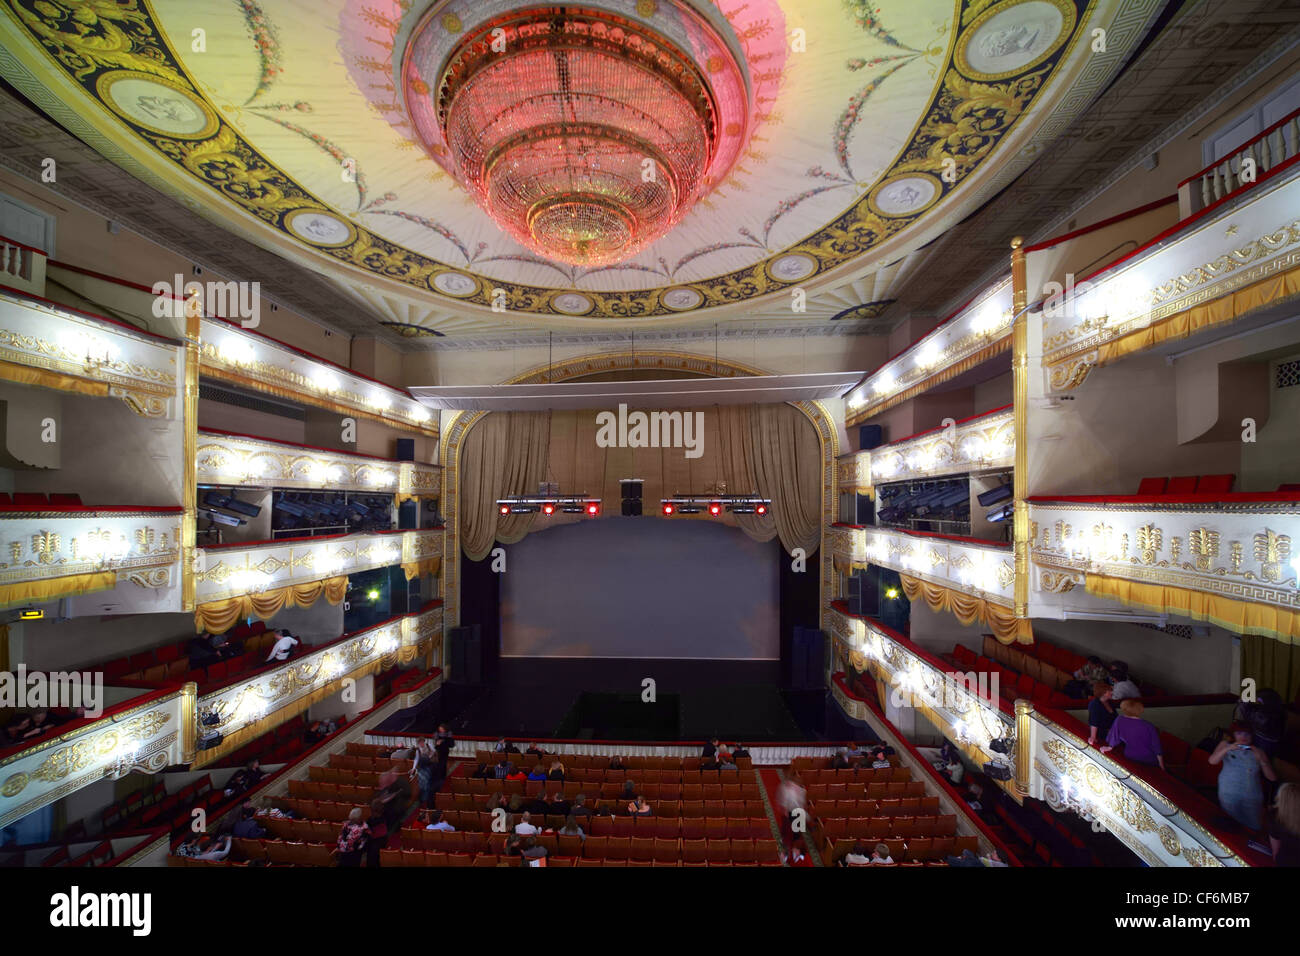 Menschen gehen Halle Abschluss Operette, die Moskauer Theater Operettentheater Moskau Operette entstanden Anfang des XX. Jahrhunderts. Stockfoto